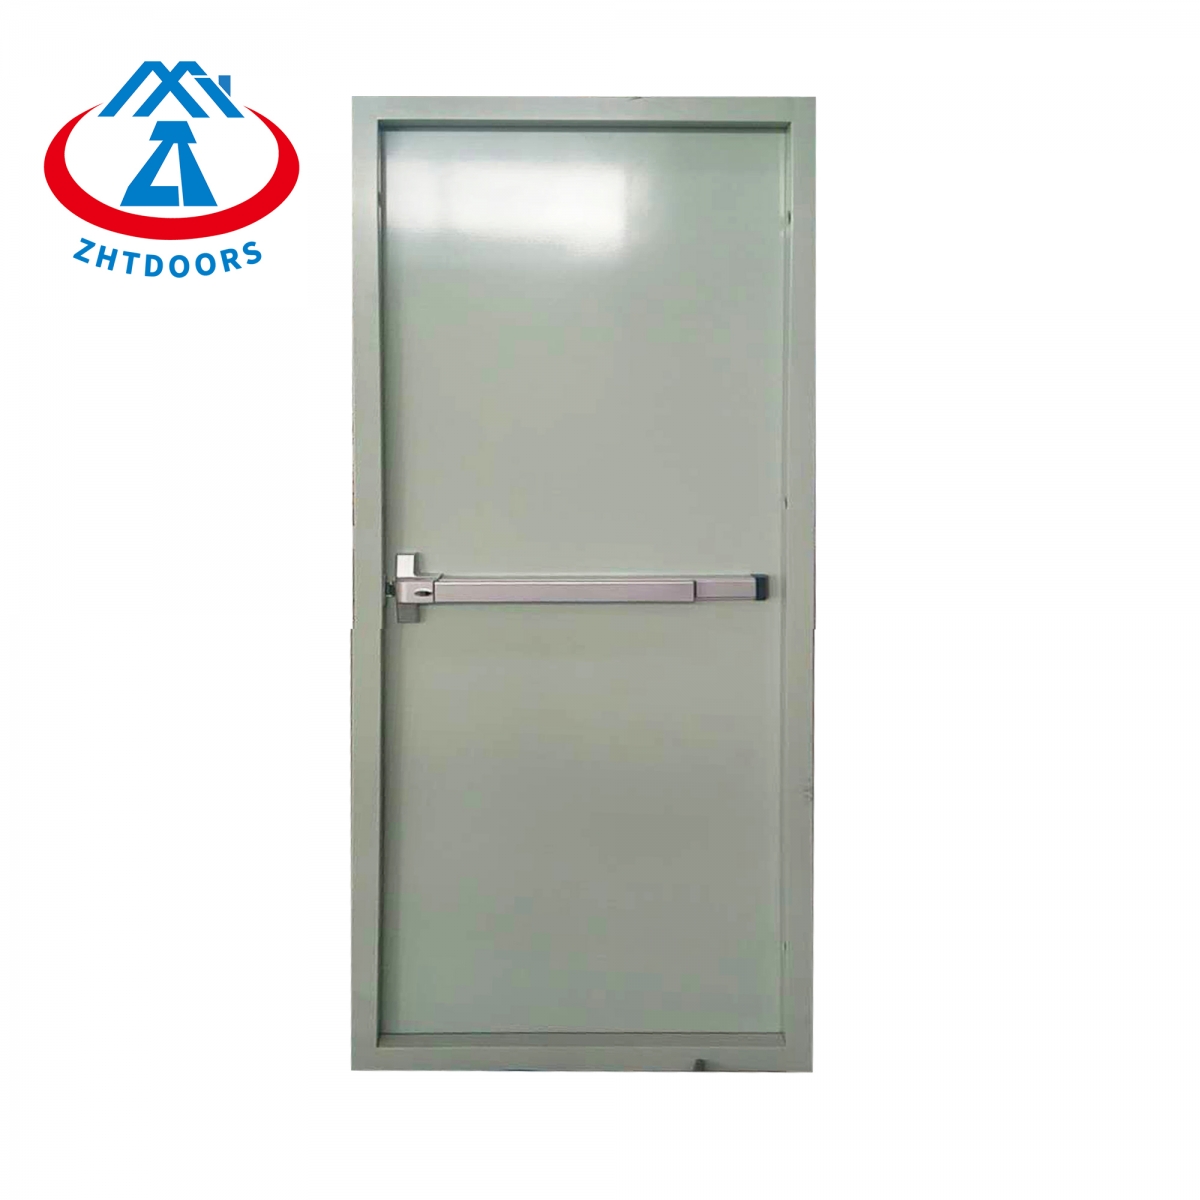 Shang Hai Fire Door-ZTFIRE Door- Fire Door,Fireproof Door,Fire rated Door,Fire Resistant Door,Steel Door,Metal Door,Exit Door